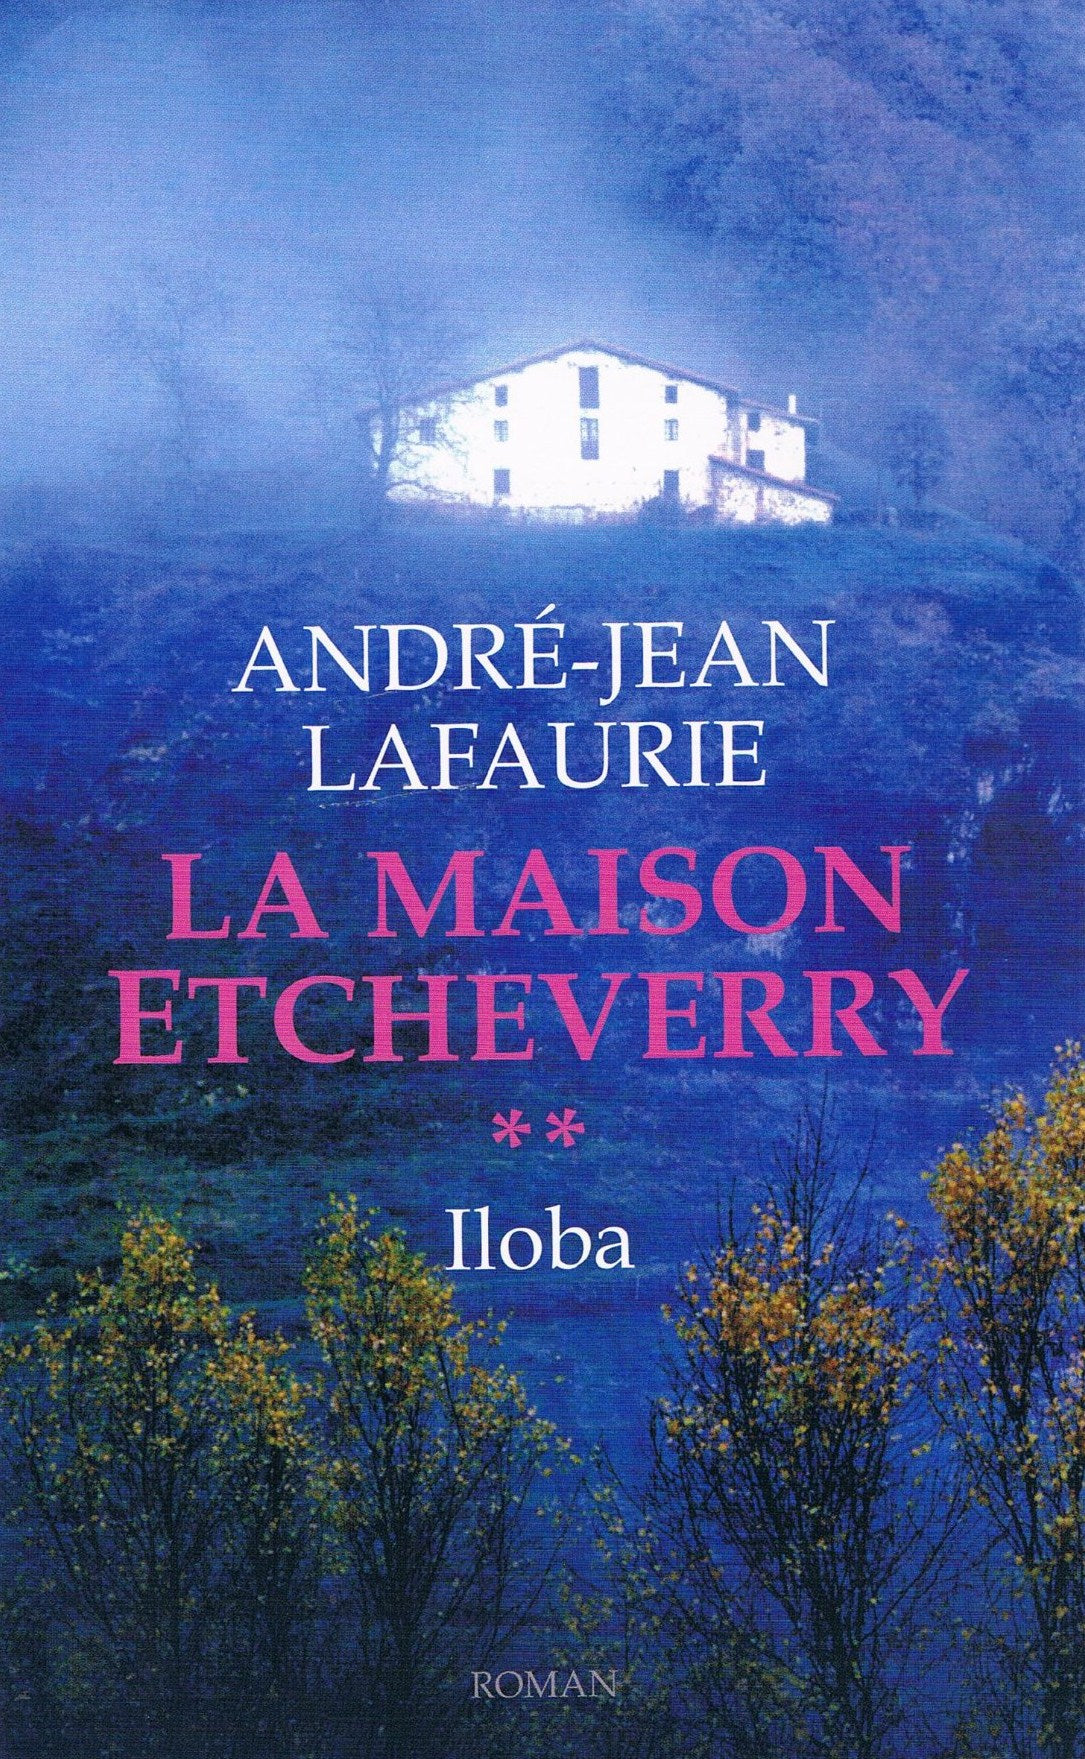 Livre ISBN 2744185647 La Maison Etcheverry # 2 : Iloba (André-Jean Lafaurie)